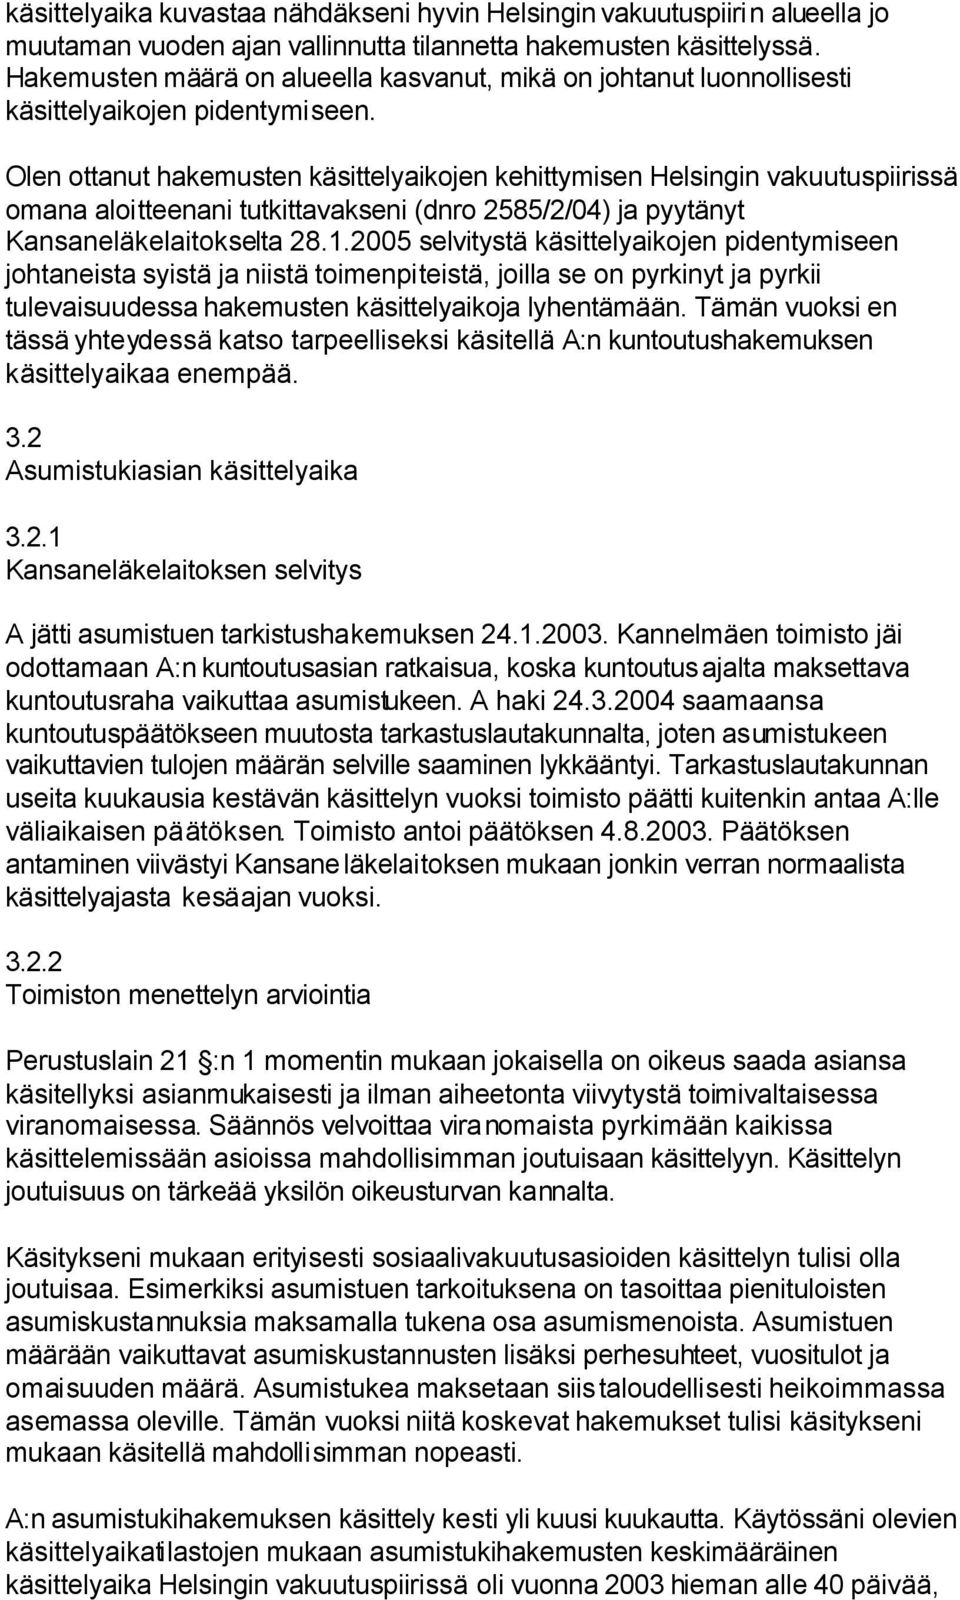 Olen ottanut hakemusten käsittelyaikojen kehittymisen Helsingin vakuutuspiirissä omana aloitteenani tutkittavakseni (dnro 2585/2/04) ja pyytänyt Kansaneläkelaitokselta 28.1.